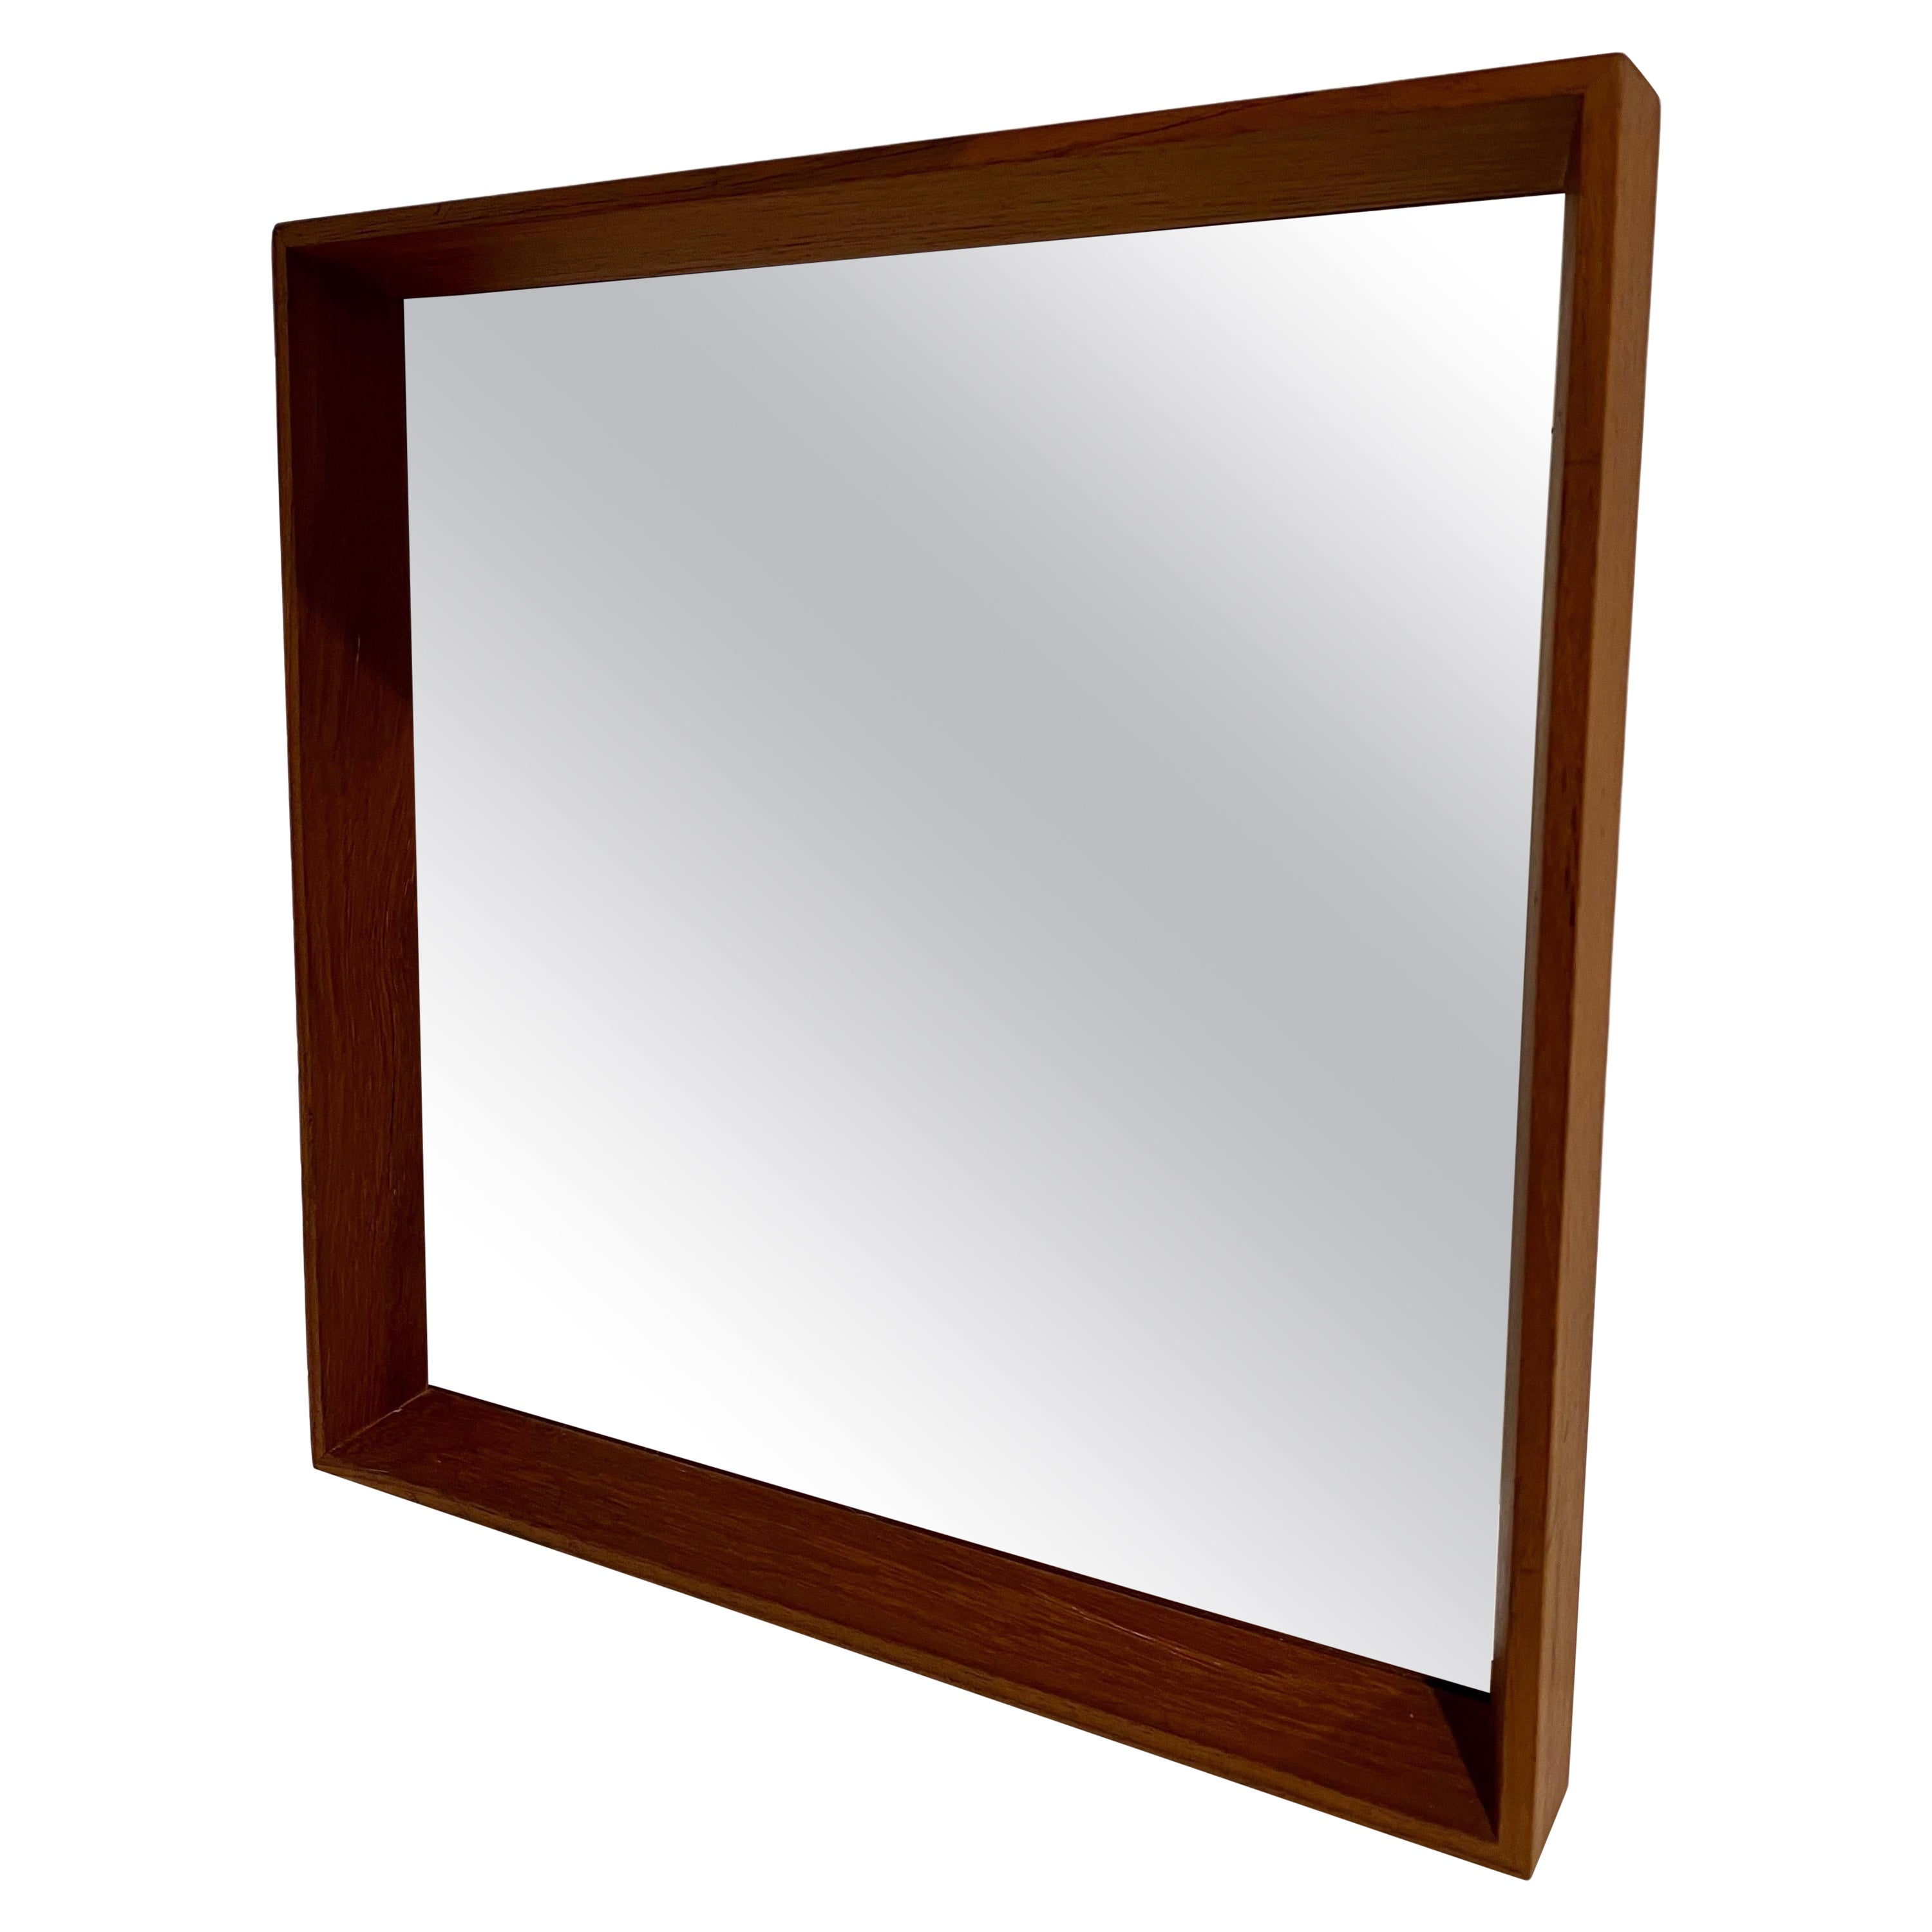 Danish Modern Solid Teak Frame Mirror Attributed to Pedersen & Hansen For Sale